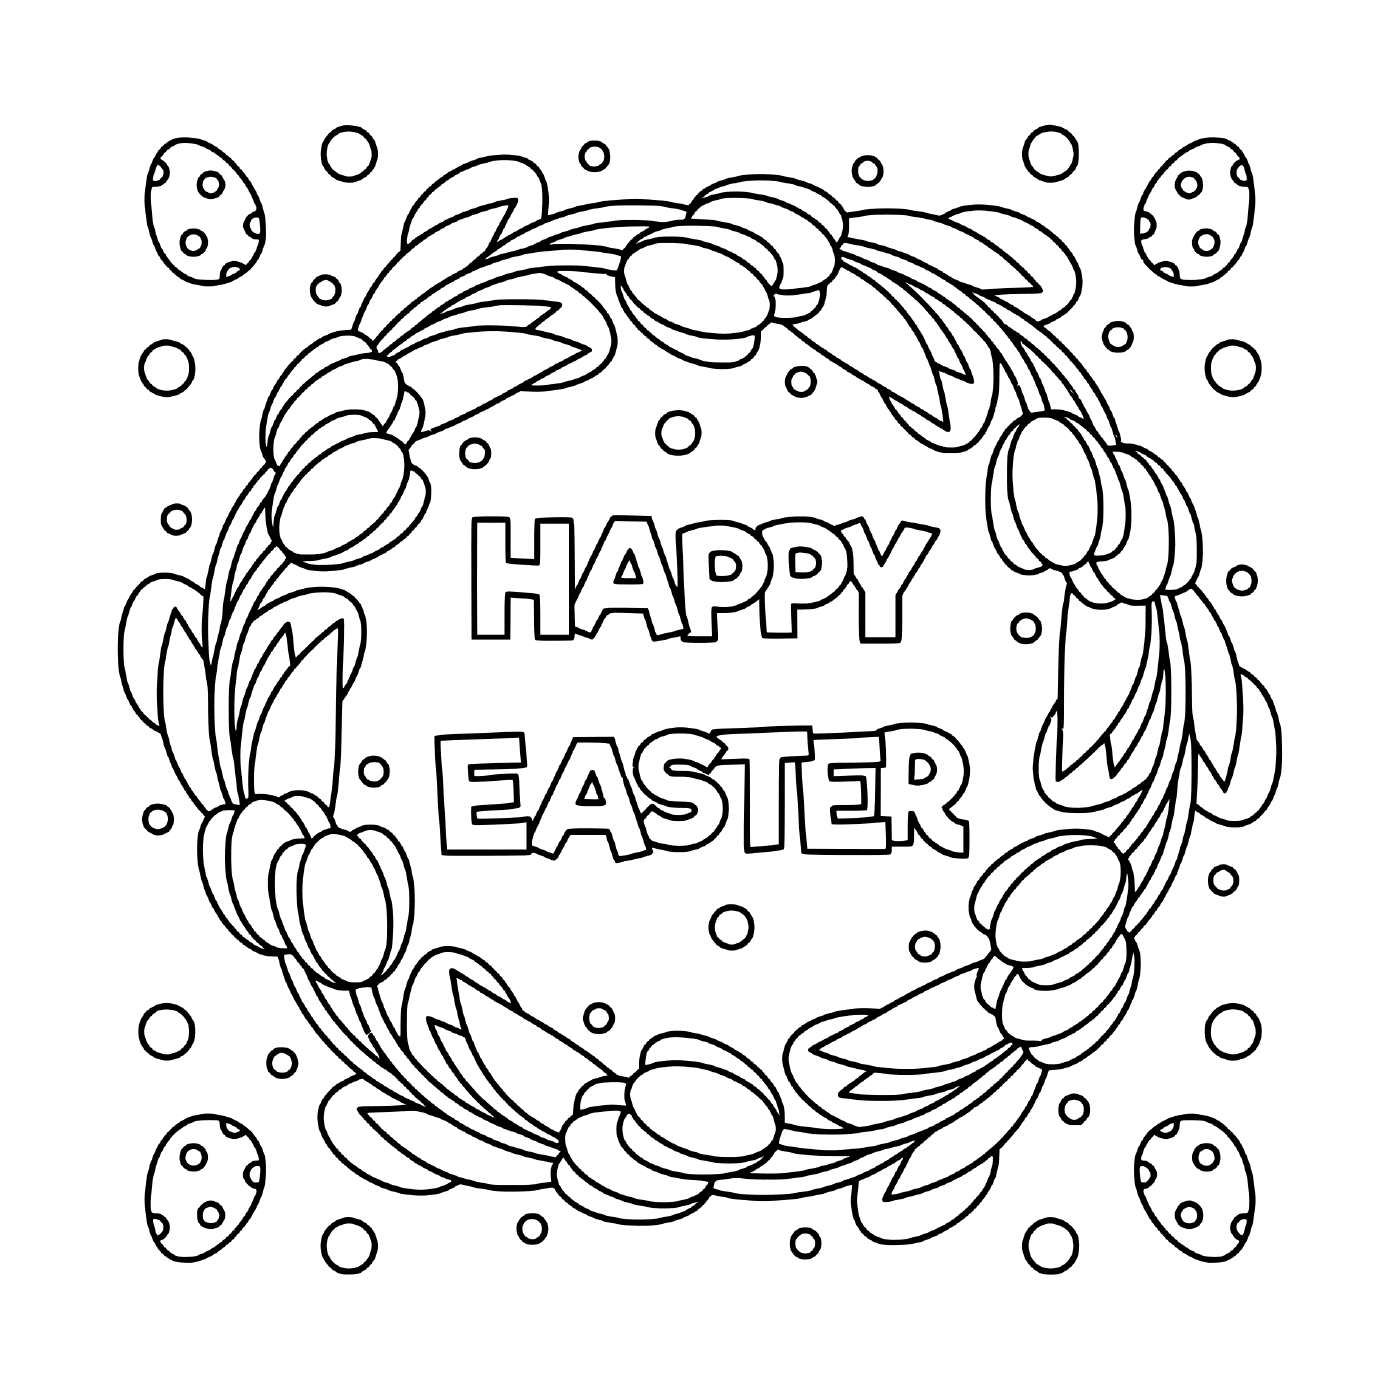  Buona Pasqua illustrazione in bianco e nero 